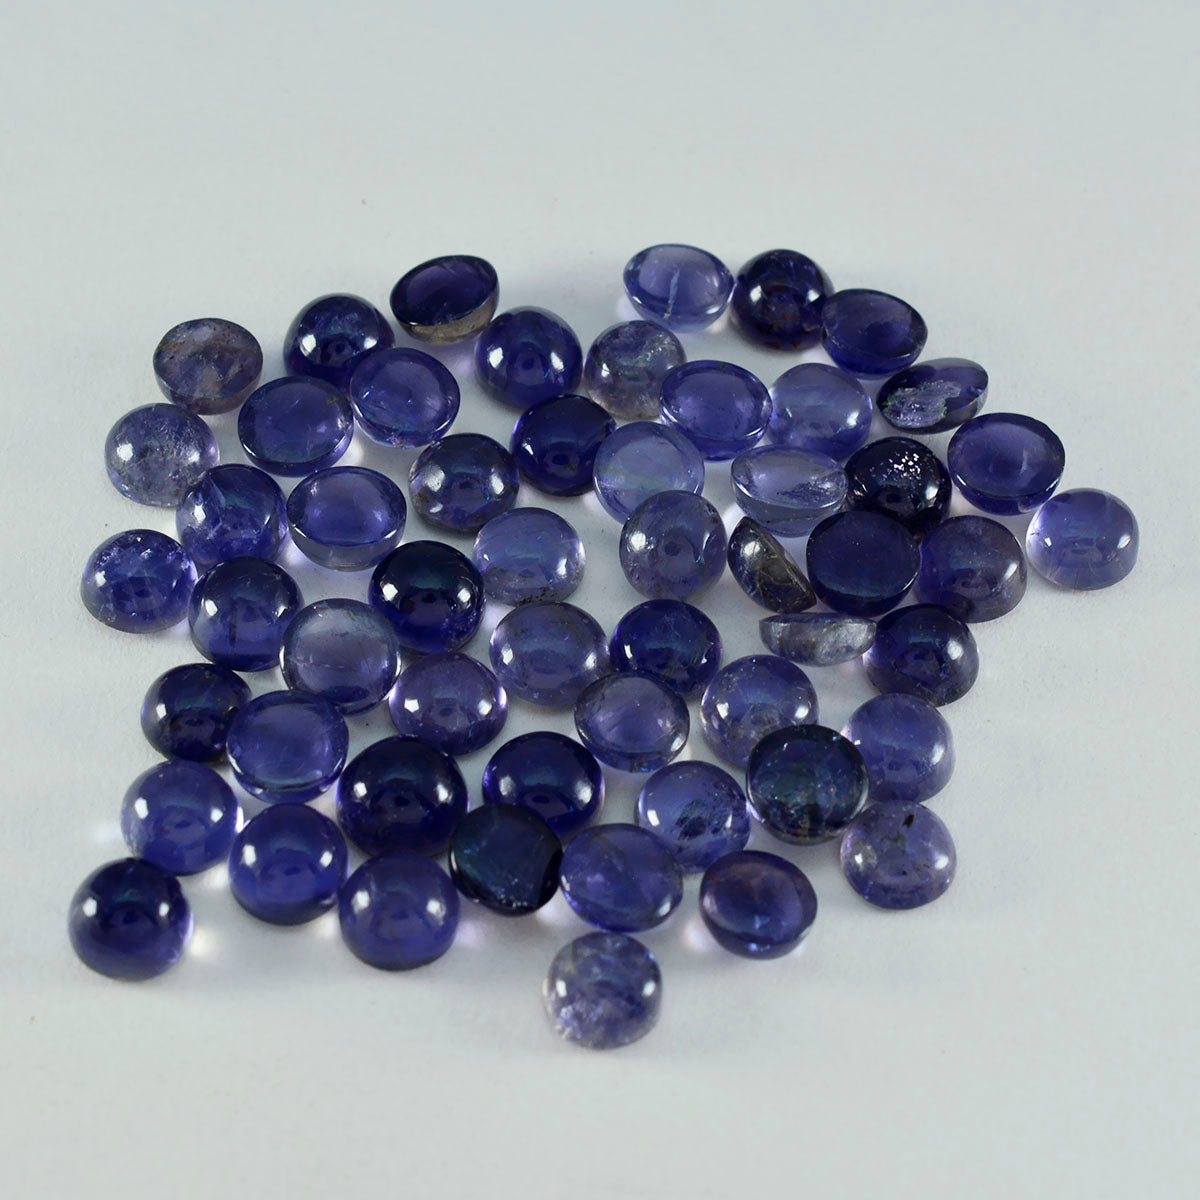 Riyogems 1 cabochon iolite bleu 6x6 mm forme ronde pierre précieuse de qualité aaa